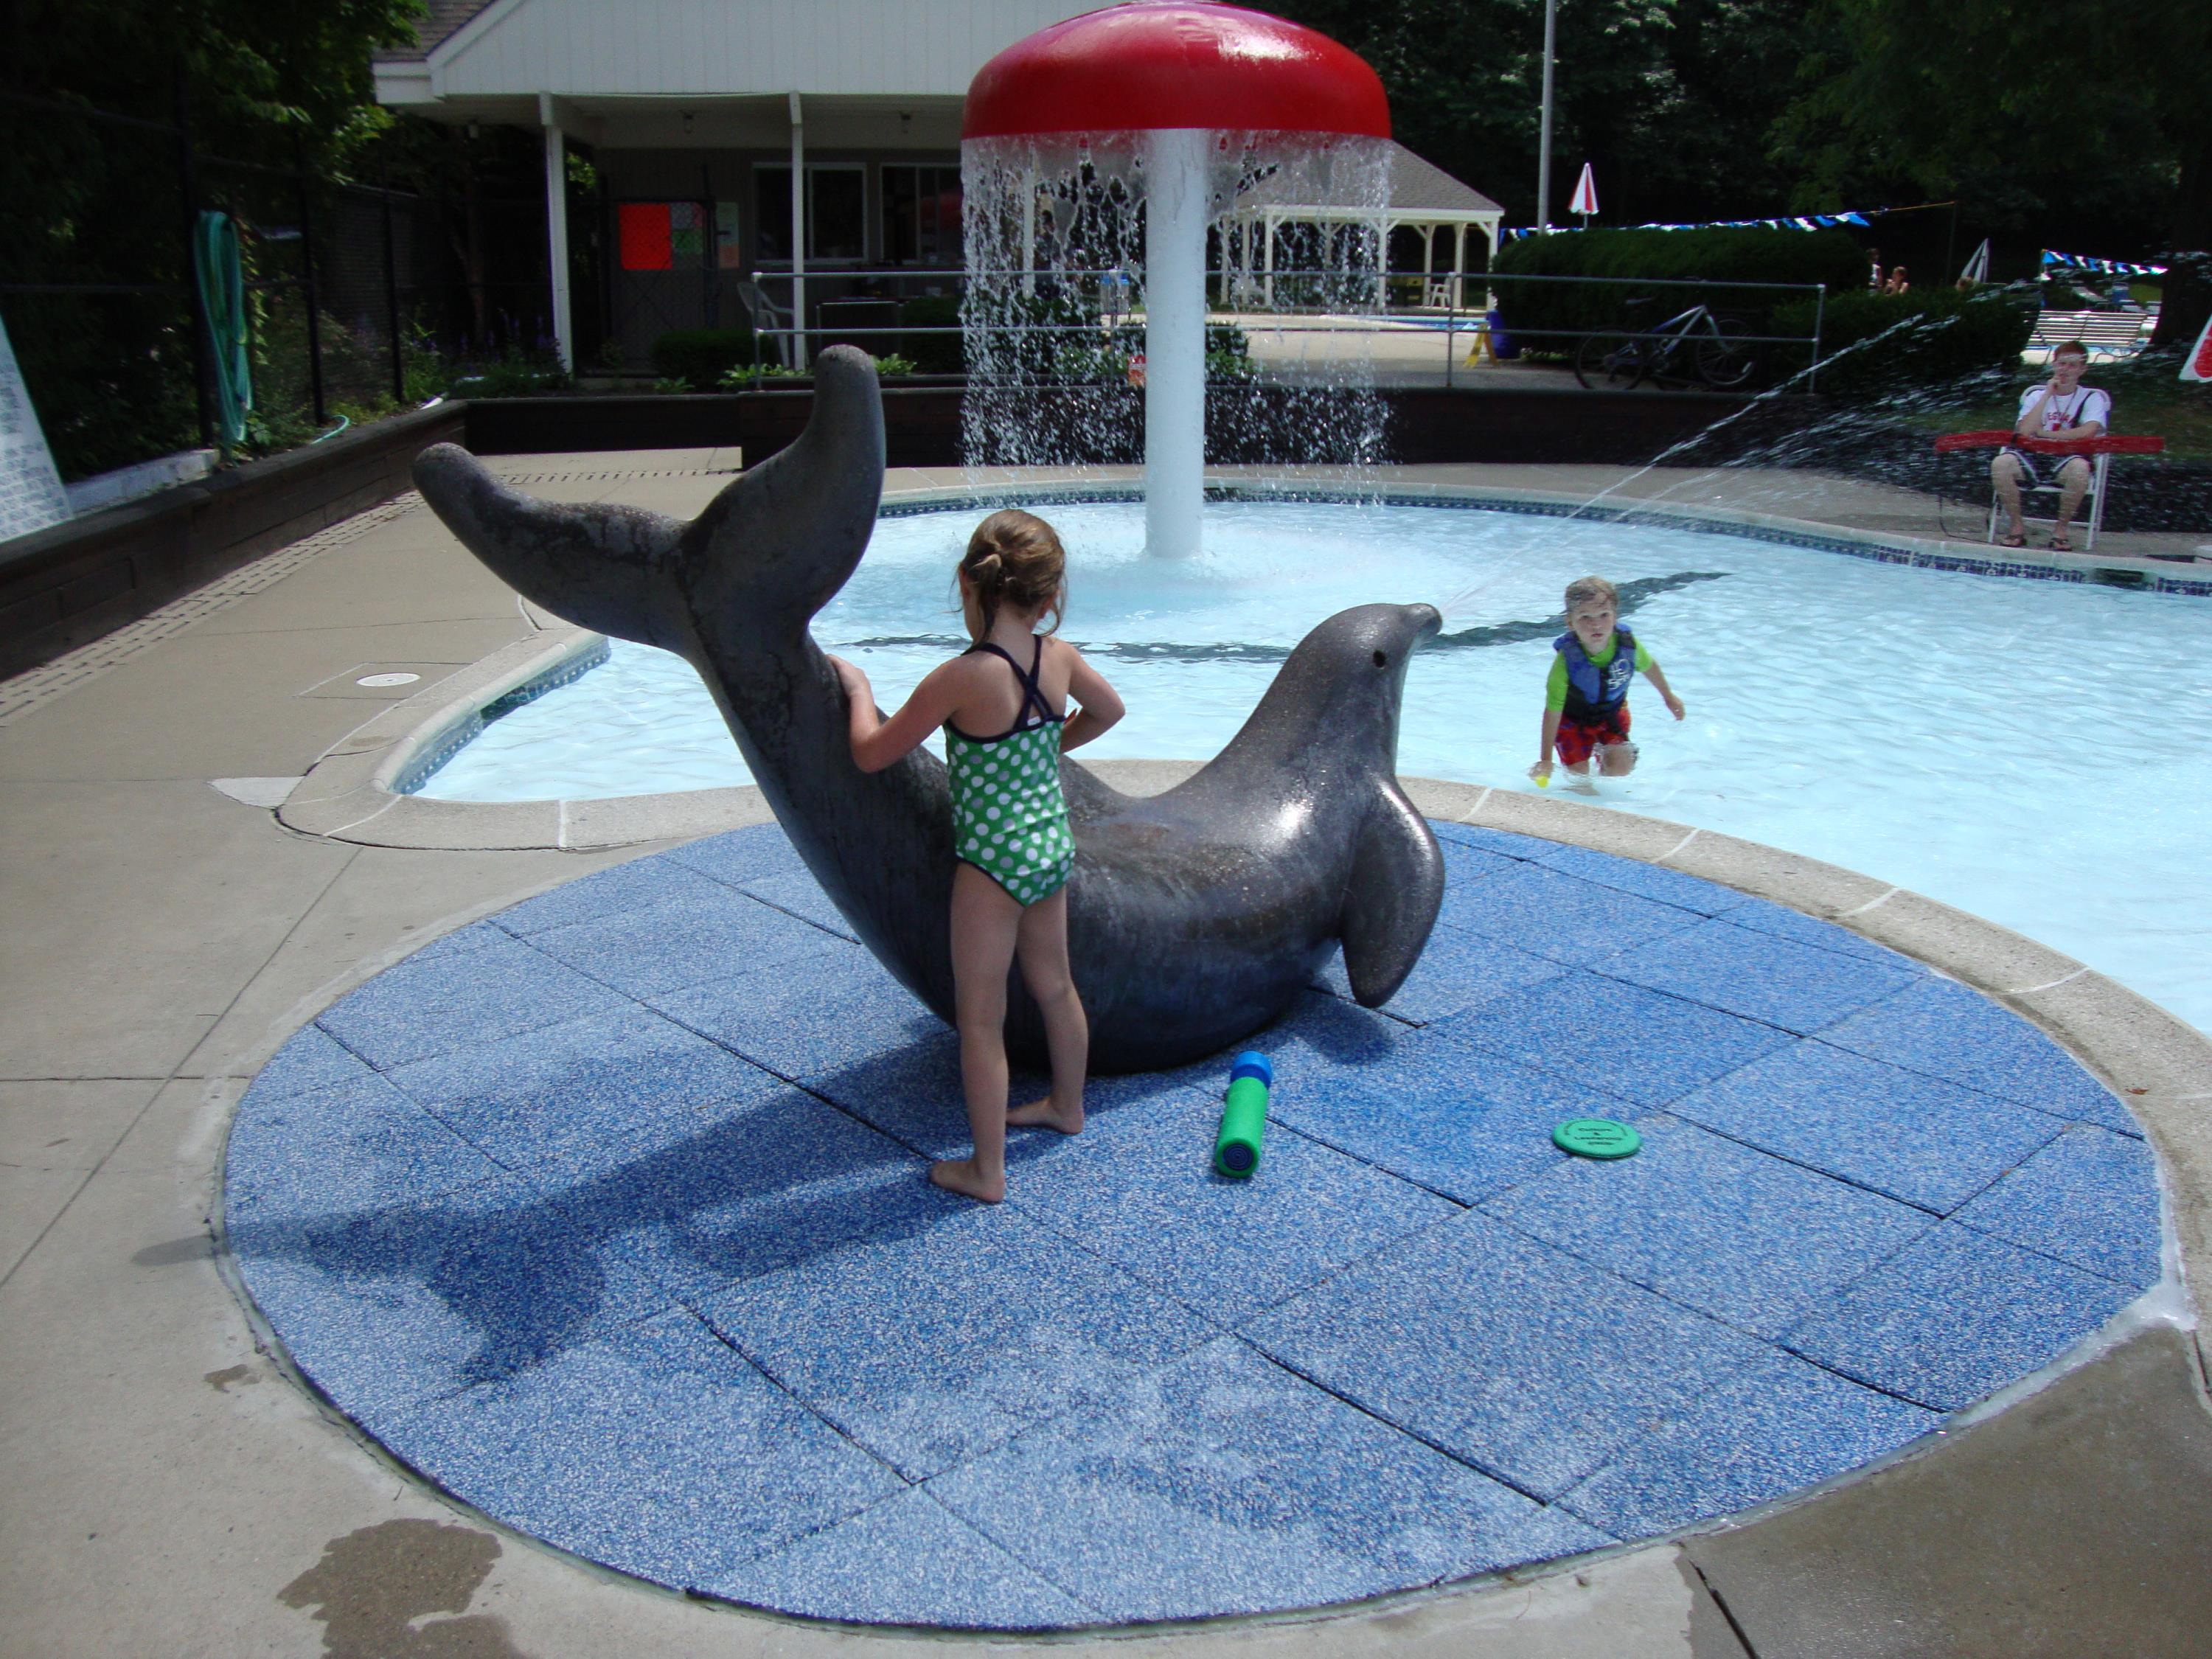 Recreational pool splash pad area using custom blended TPV top tiles